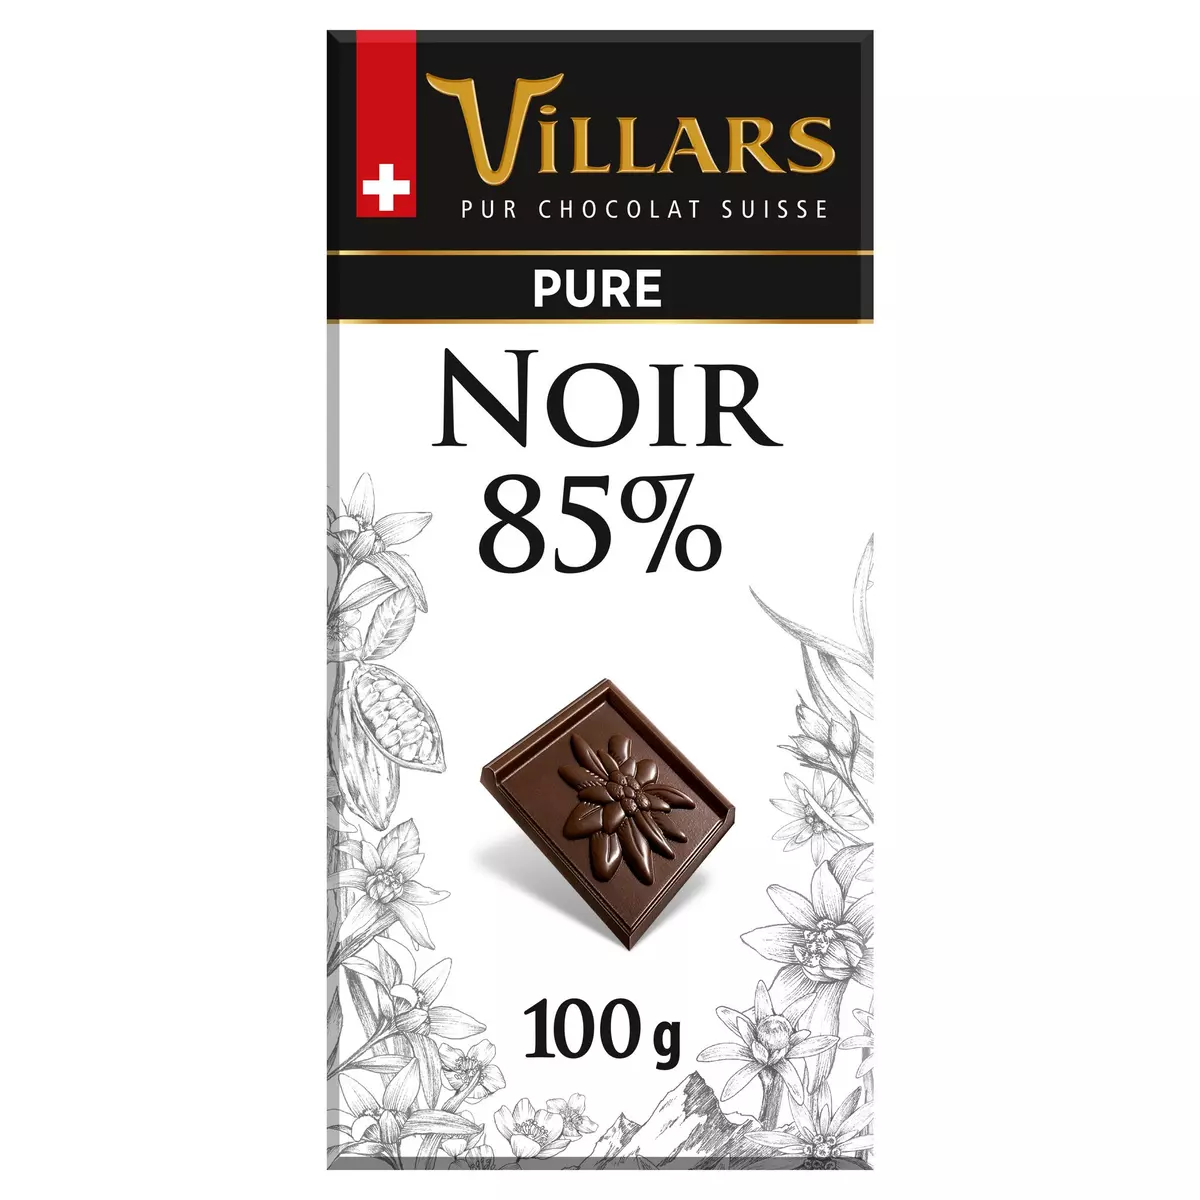 VILLARS Tablette de chocolat noir 85% 1 pièce 100g